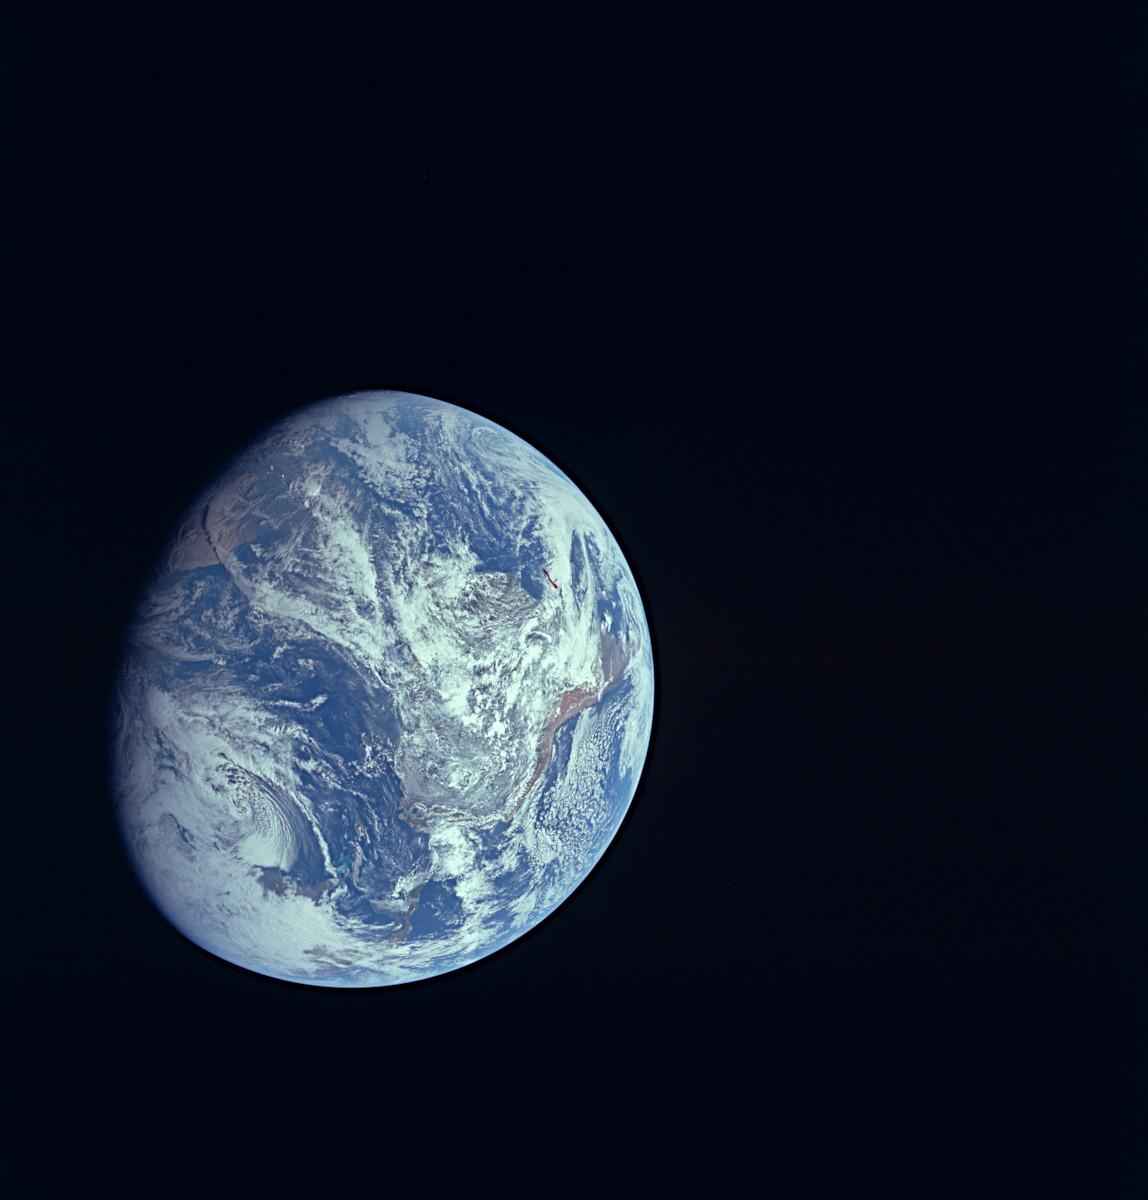 アポロ8号で人類が初めて撮影した地球の全体像 | アストロピクス